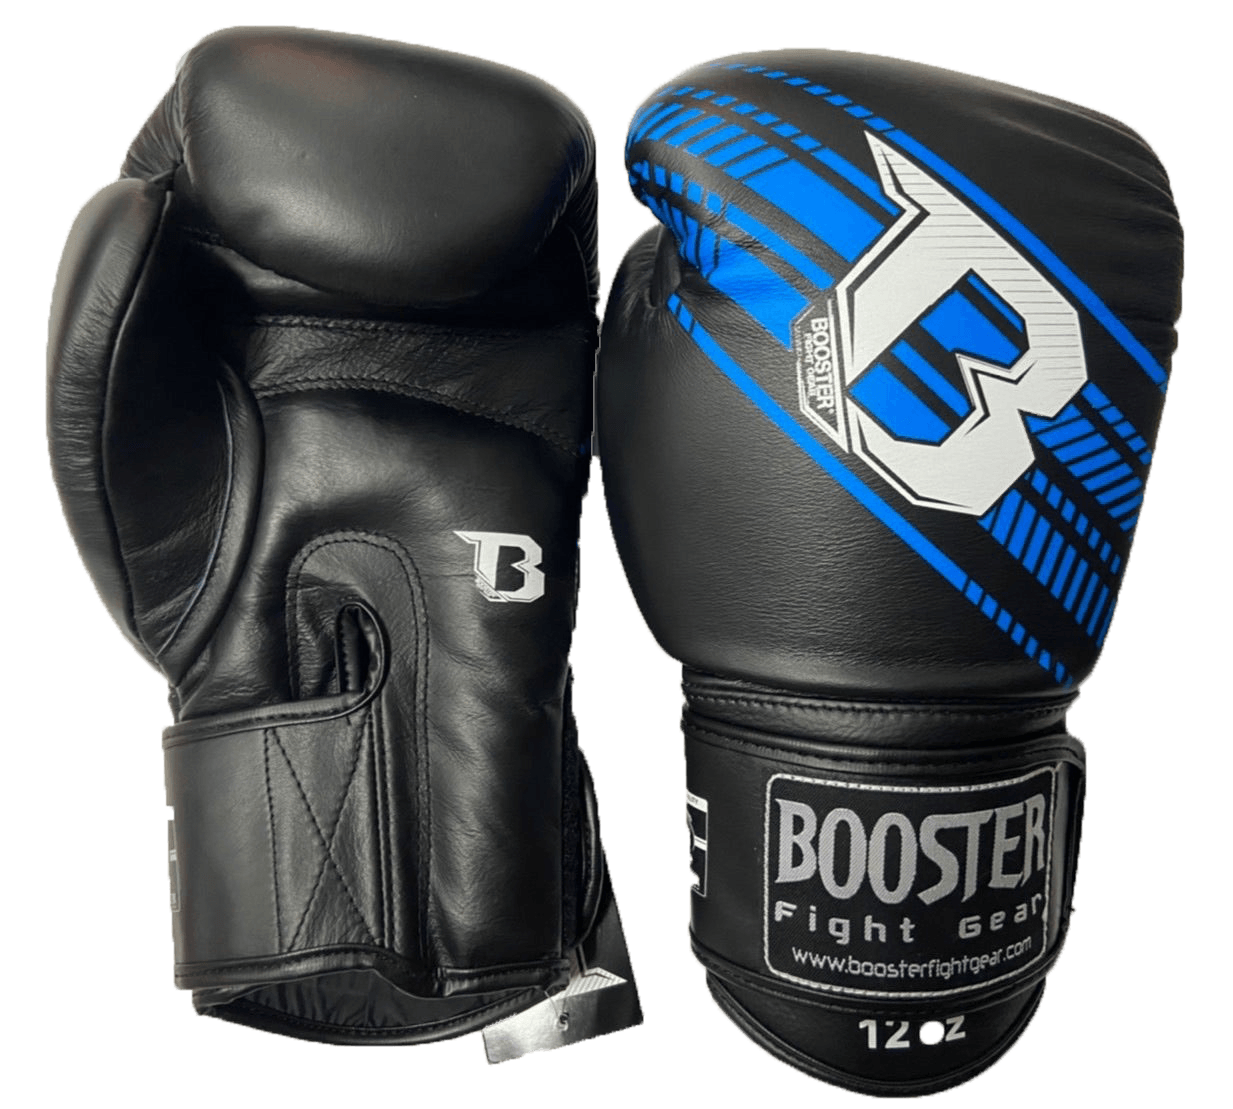 Booster Boxing Gloves BGLV4 LIGHT BK/BU - SUPER EXPORT SHOP